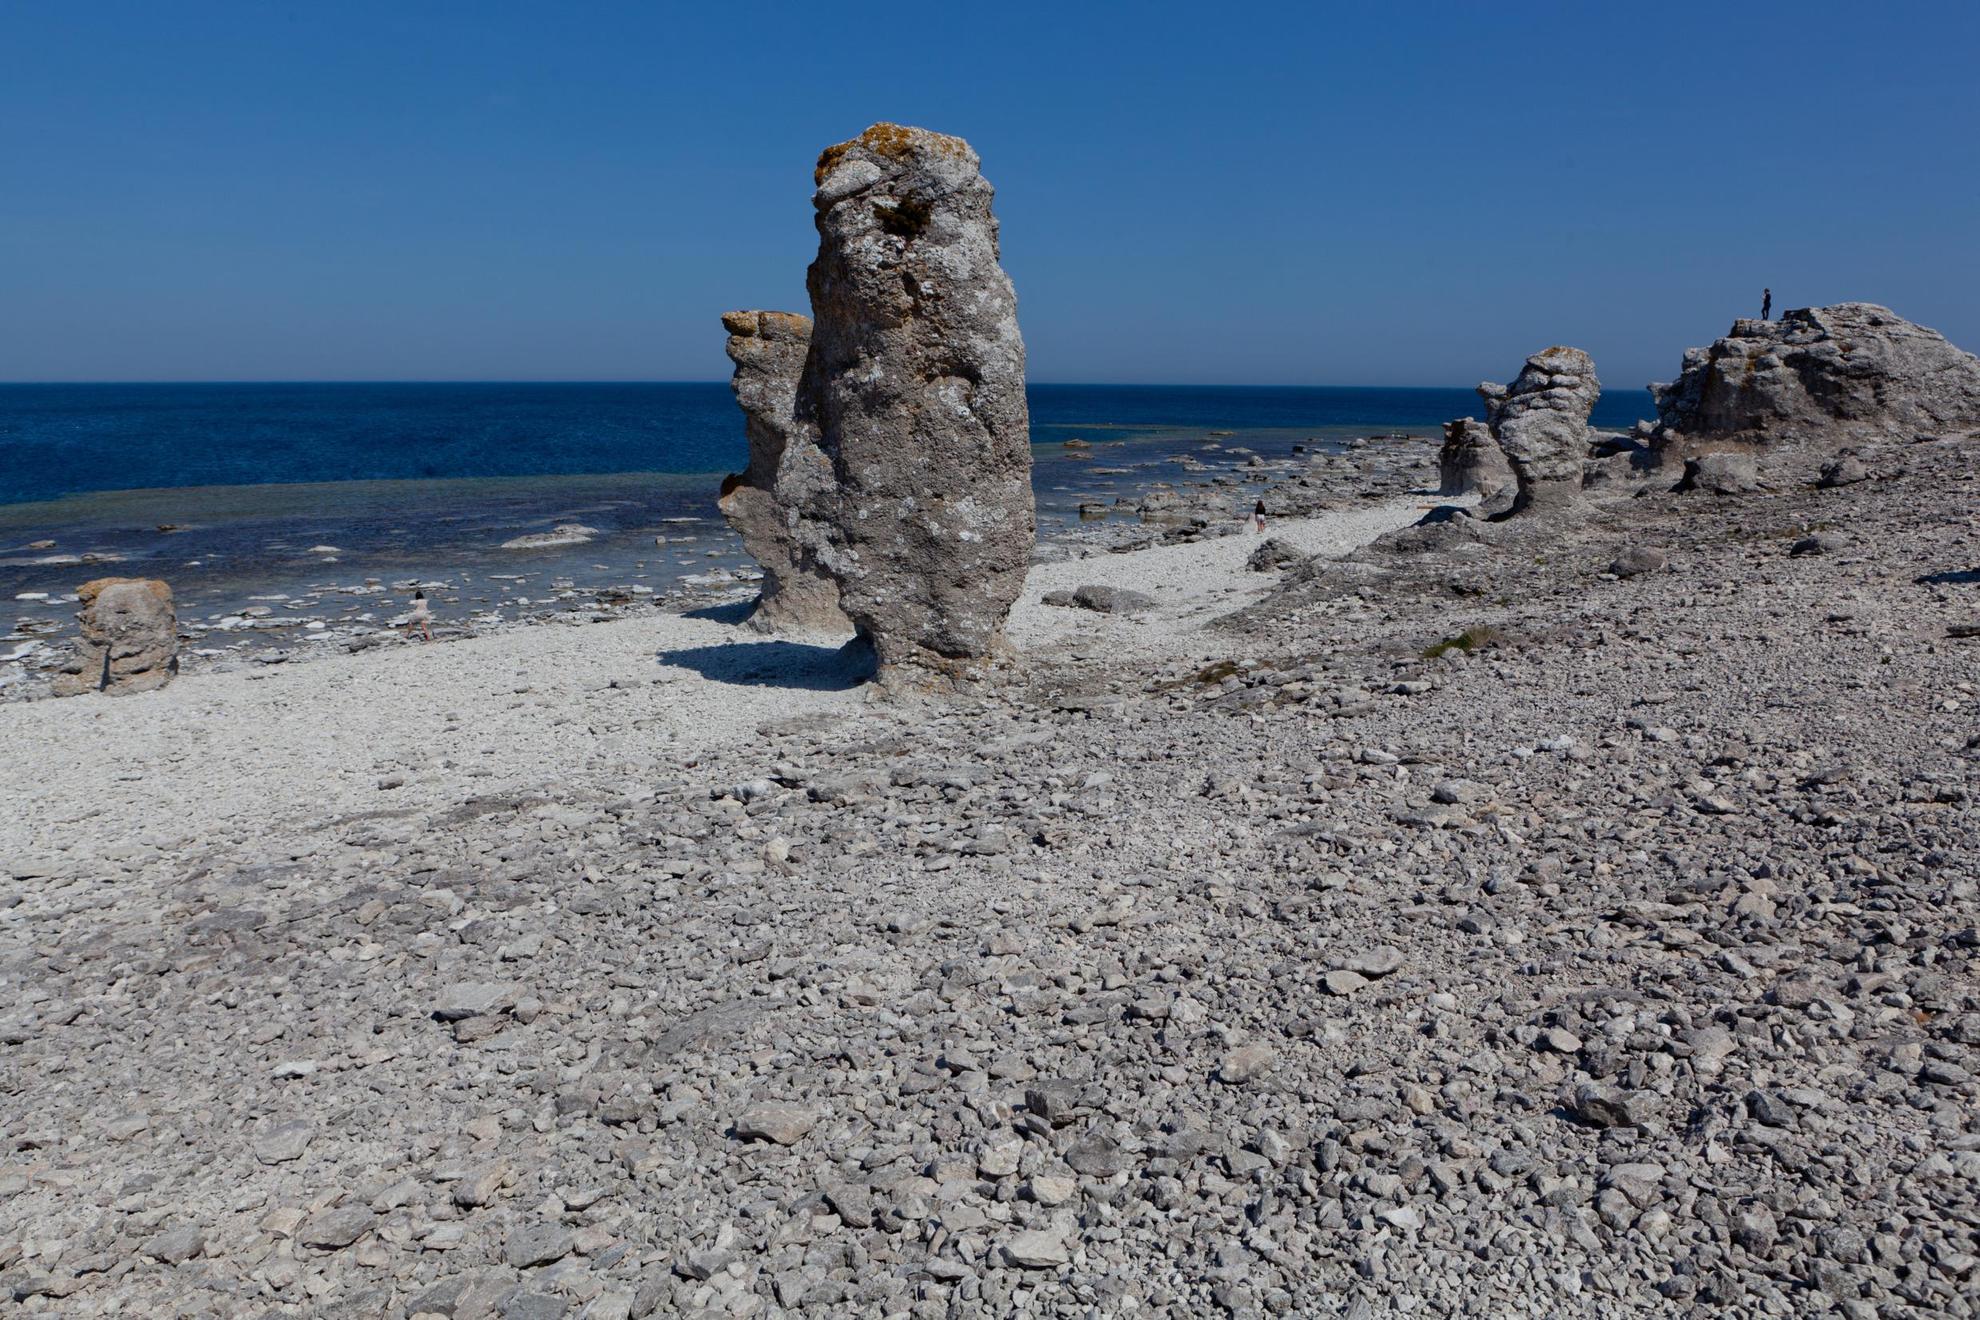 Monolithes de calcaire sur une plage rocheuse de Gotland. Un homme se tient sur l'un des rochers, face à l'océan.